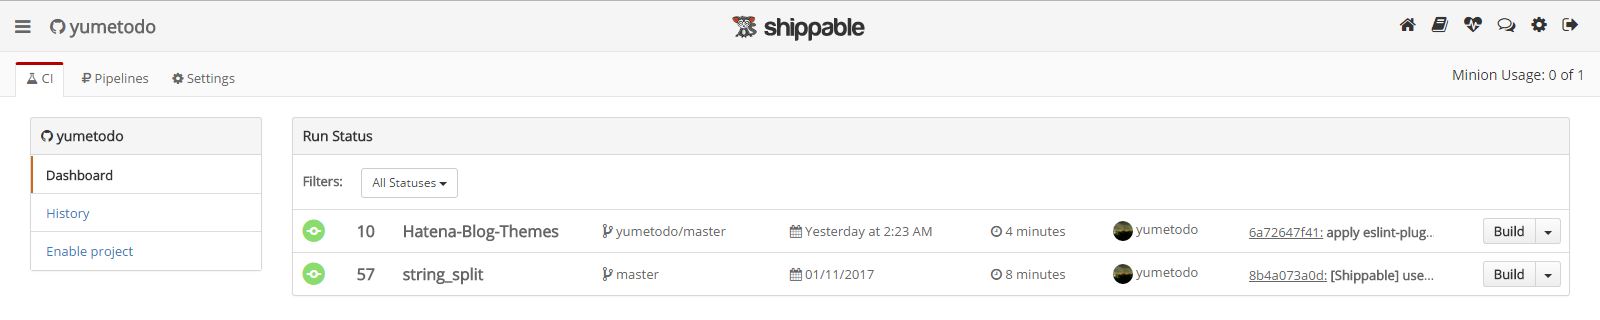 Shippable's Dashboard